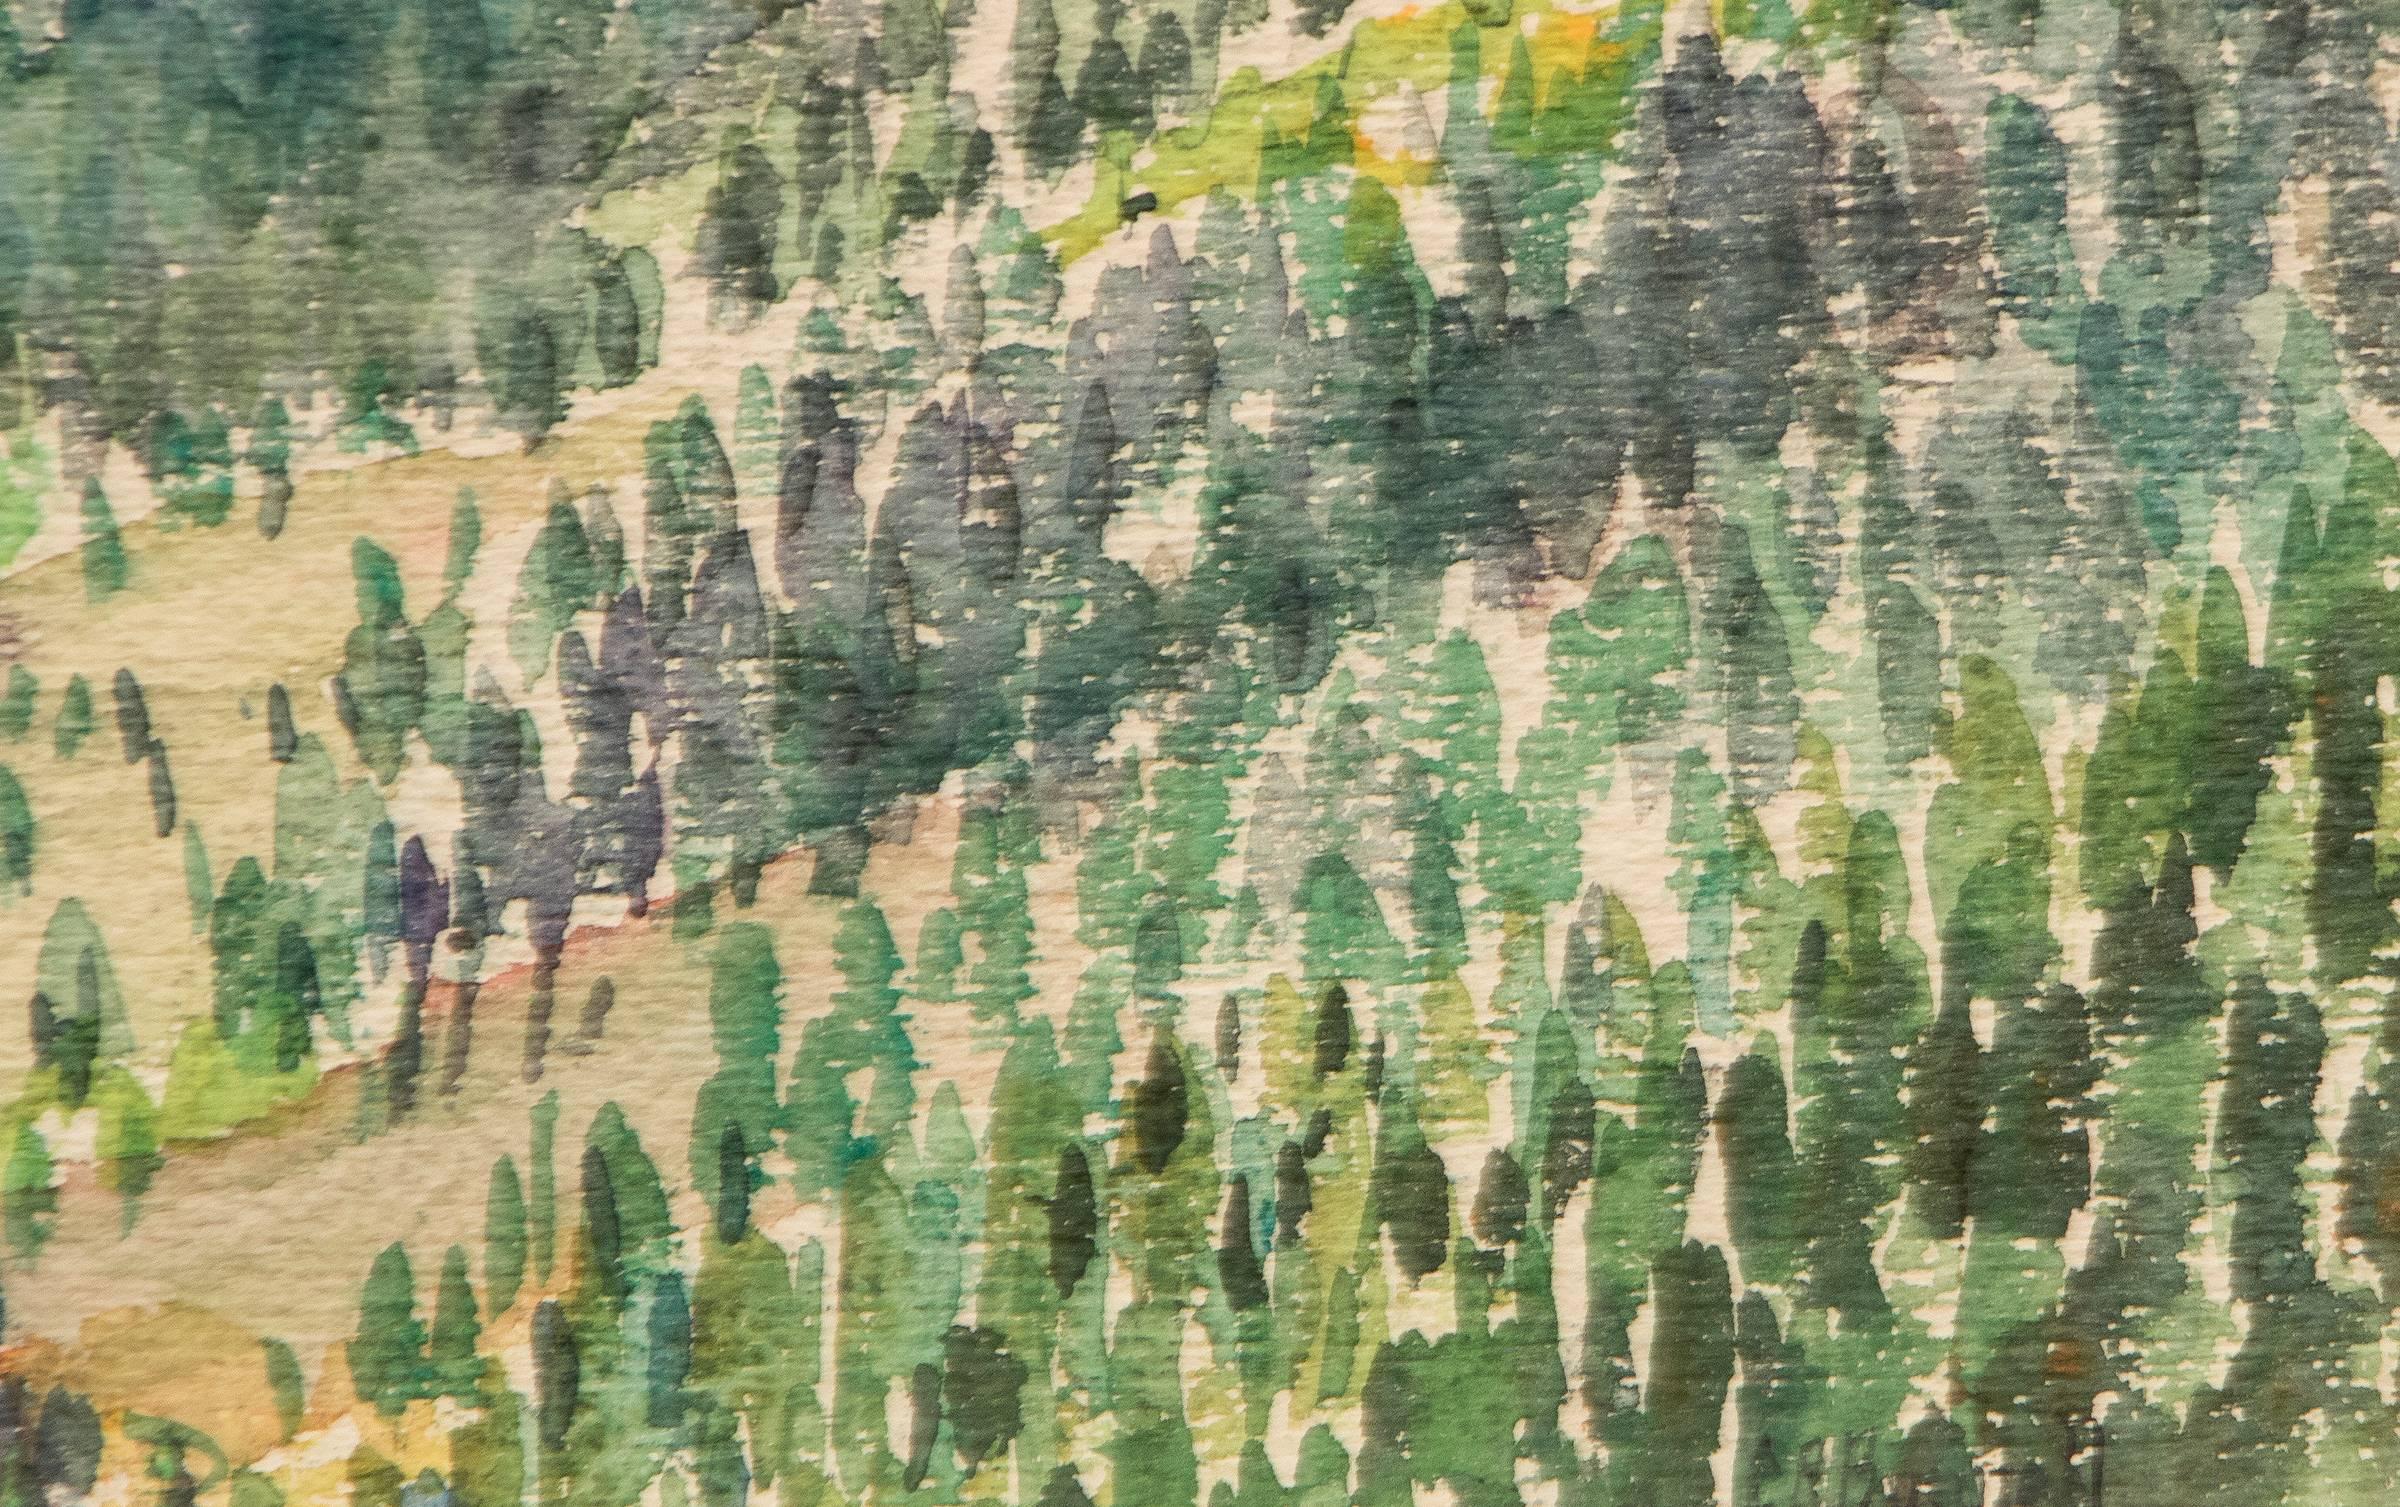 Aquarell auf Papier von Cameron's Cove außerhalb von Colorado Springs, Colorado, von Charles Ragland Bunnell aus den 1930er Jahren. Eine malerische Berglandschaft in Grün-, Blau- und Brauntönen. Die Außenmaße betragen 19 ¾ x 23 ¾ x 1 ¼ Zoll,